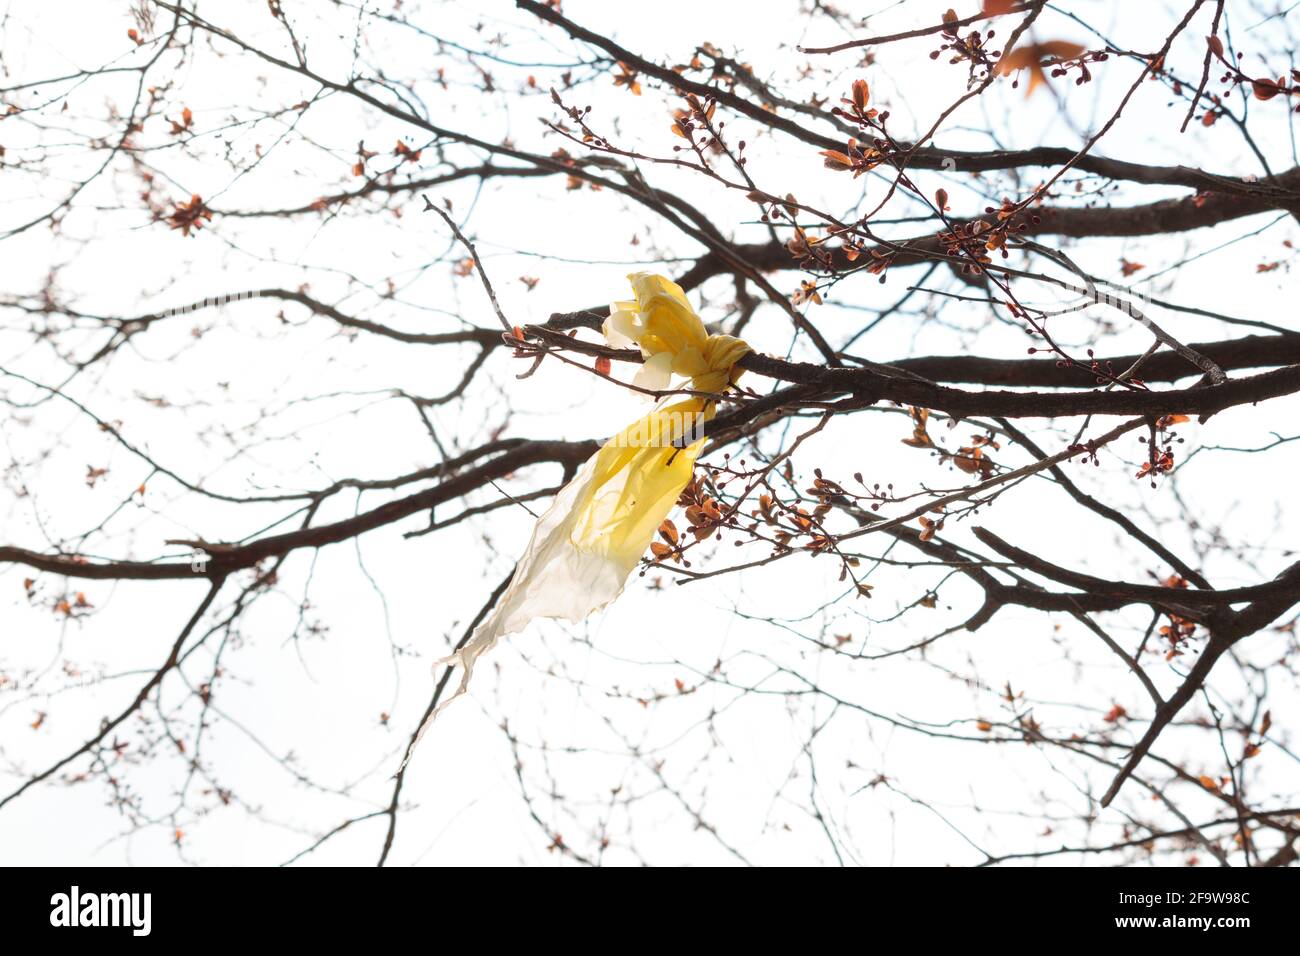 Bolsa de plástico amarilla atada a una rama de árbol a principios de primavera, símbolo de residuos plásticos, contaminación, ensuciamiento y comportamiento humano que daña el medio ambiente Foto de stock